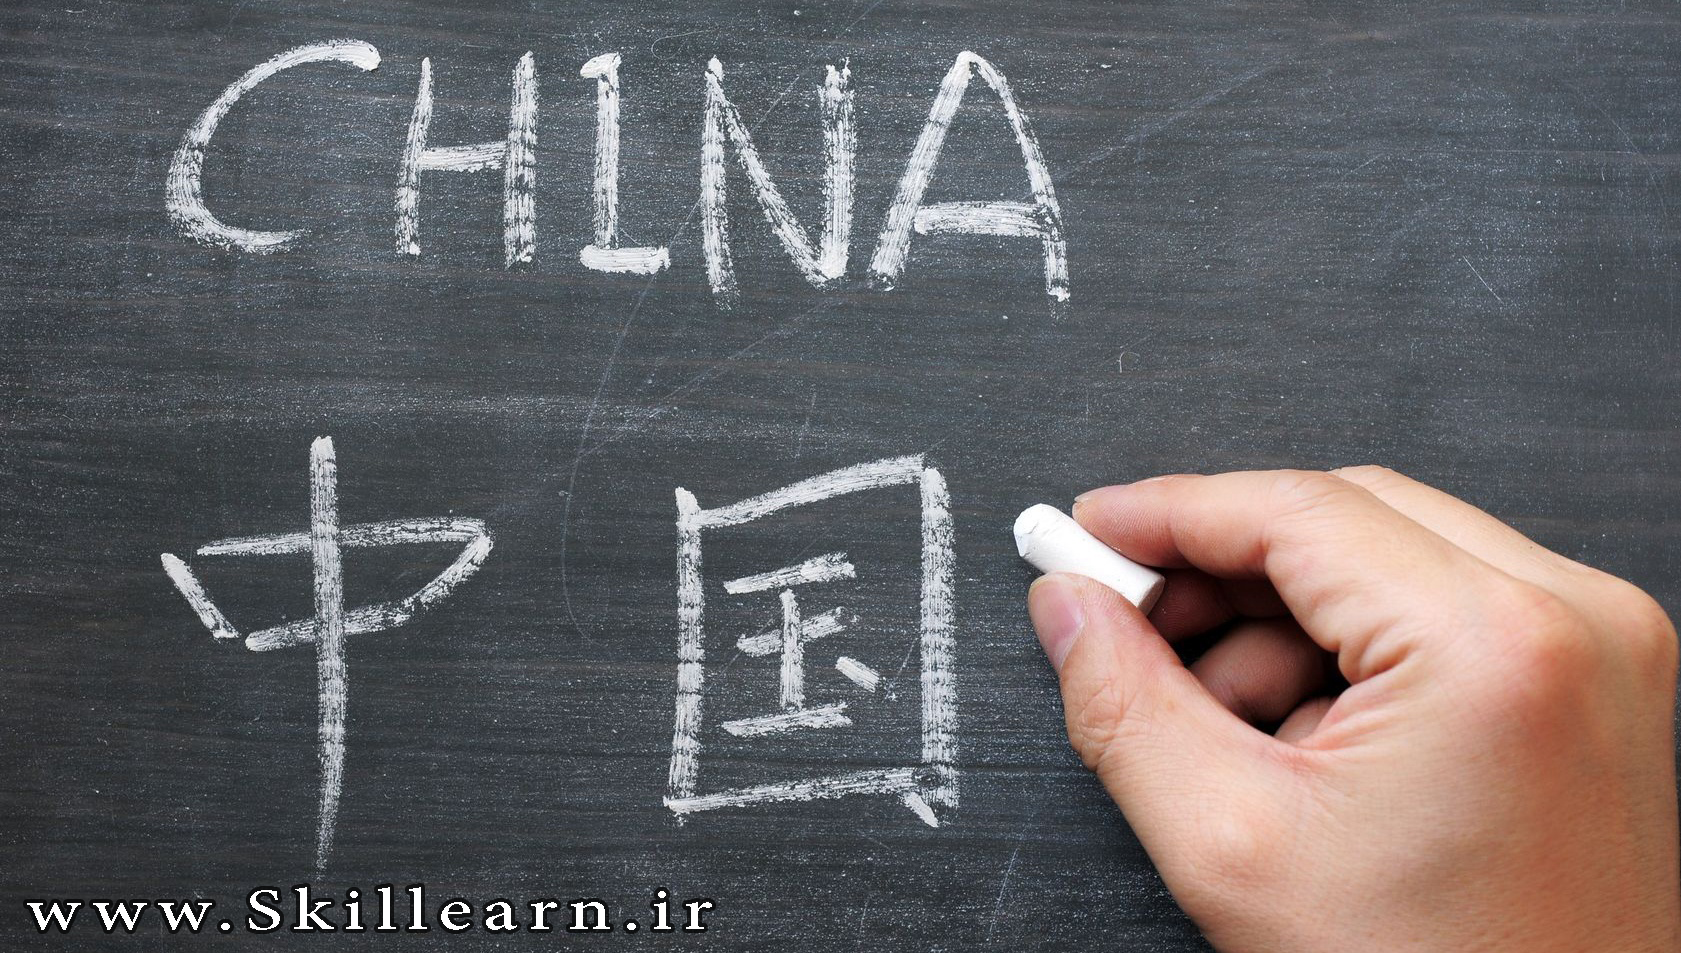 زبان چینی در 100 مدرسه اماراتی تدریس خواهد شد! |دلیل تاکید این کشور بر آموزش زبان های بین المللی چیست؟